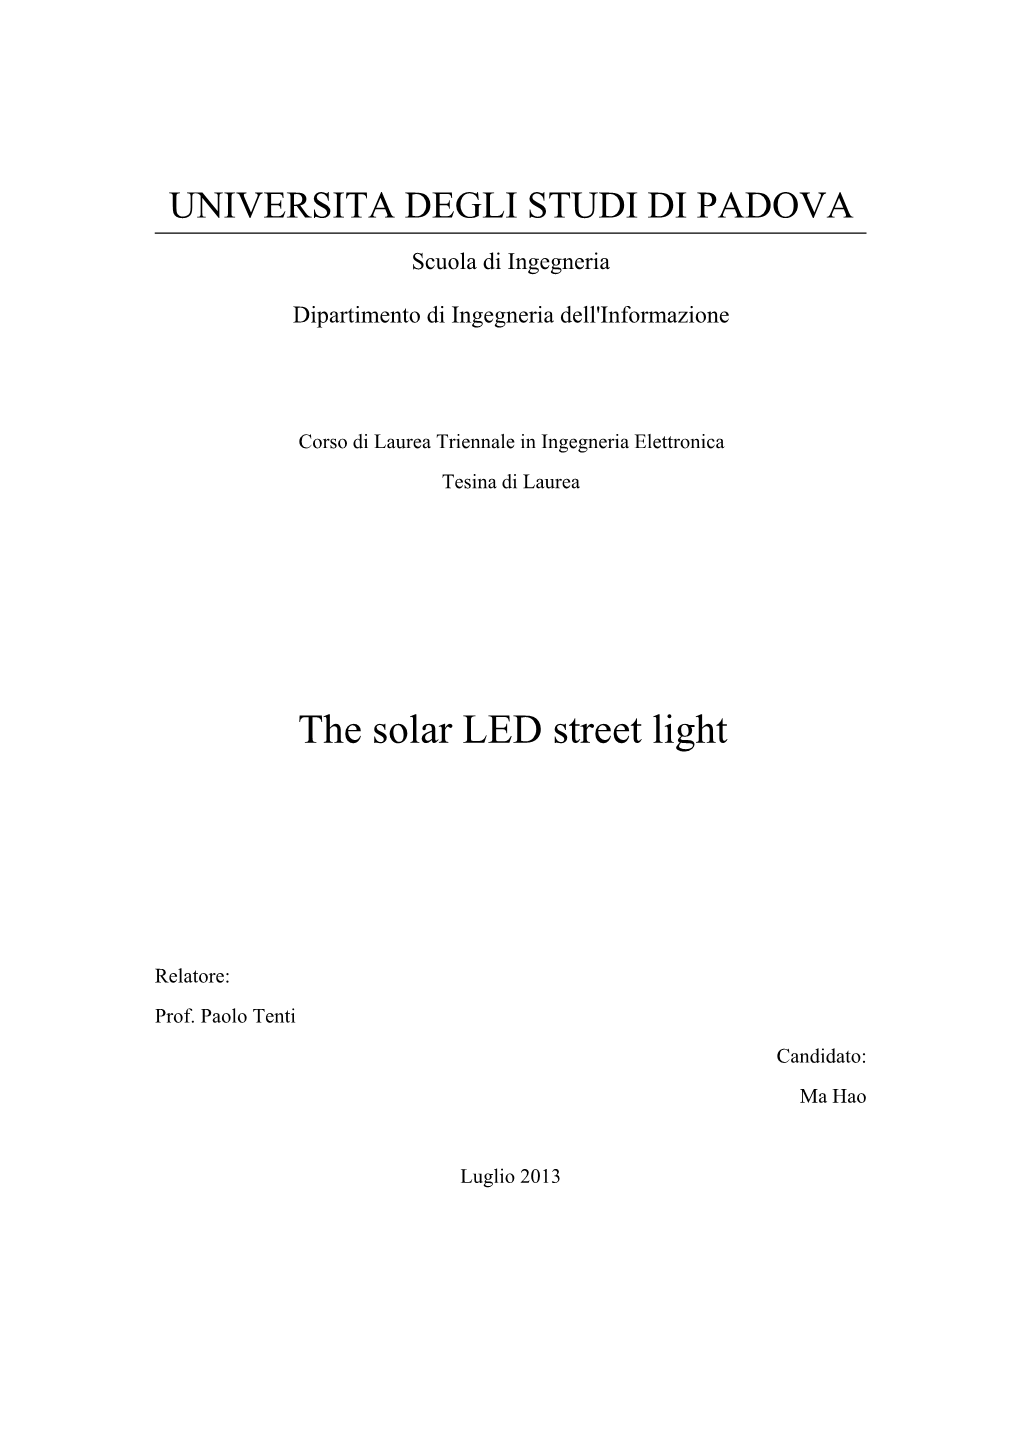 The Solar LED Street Light